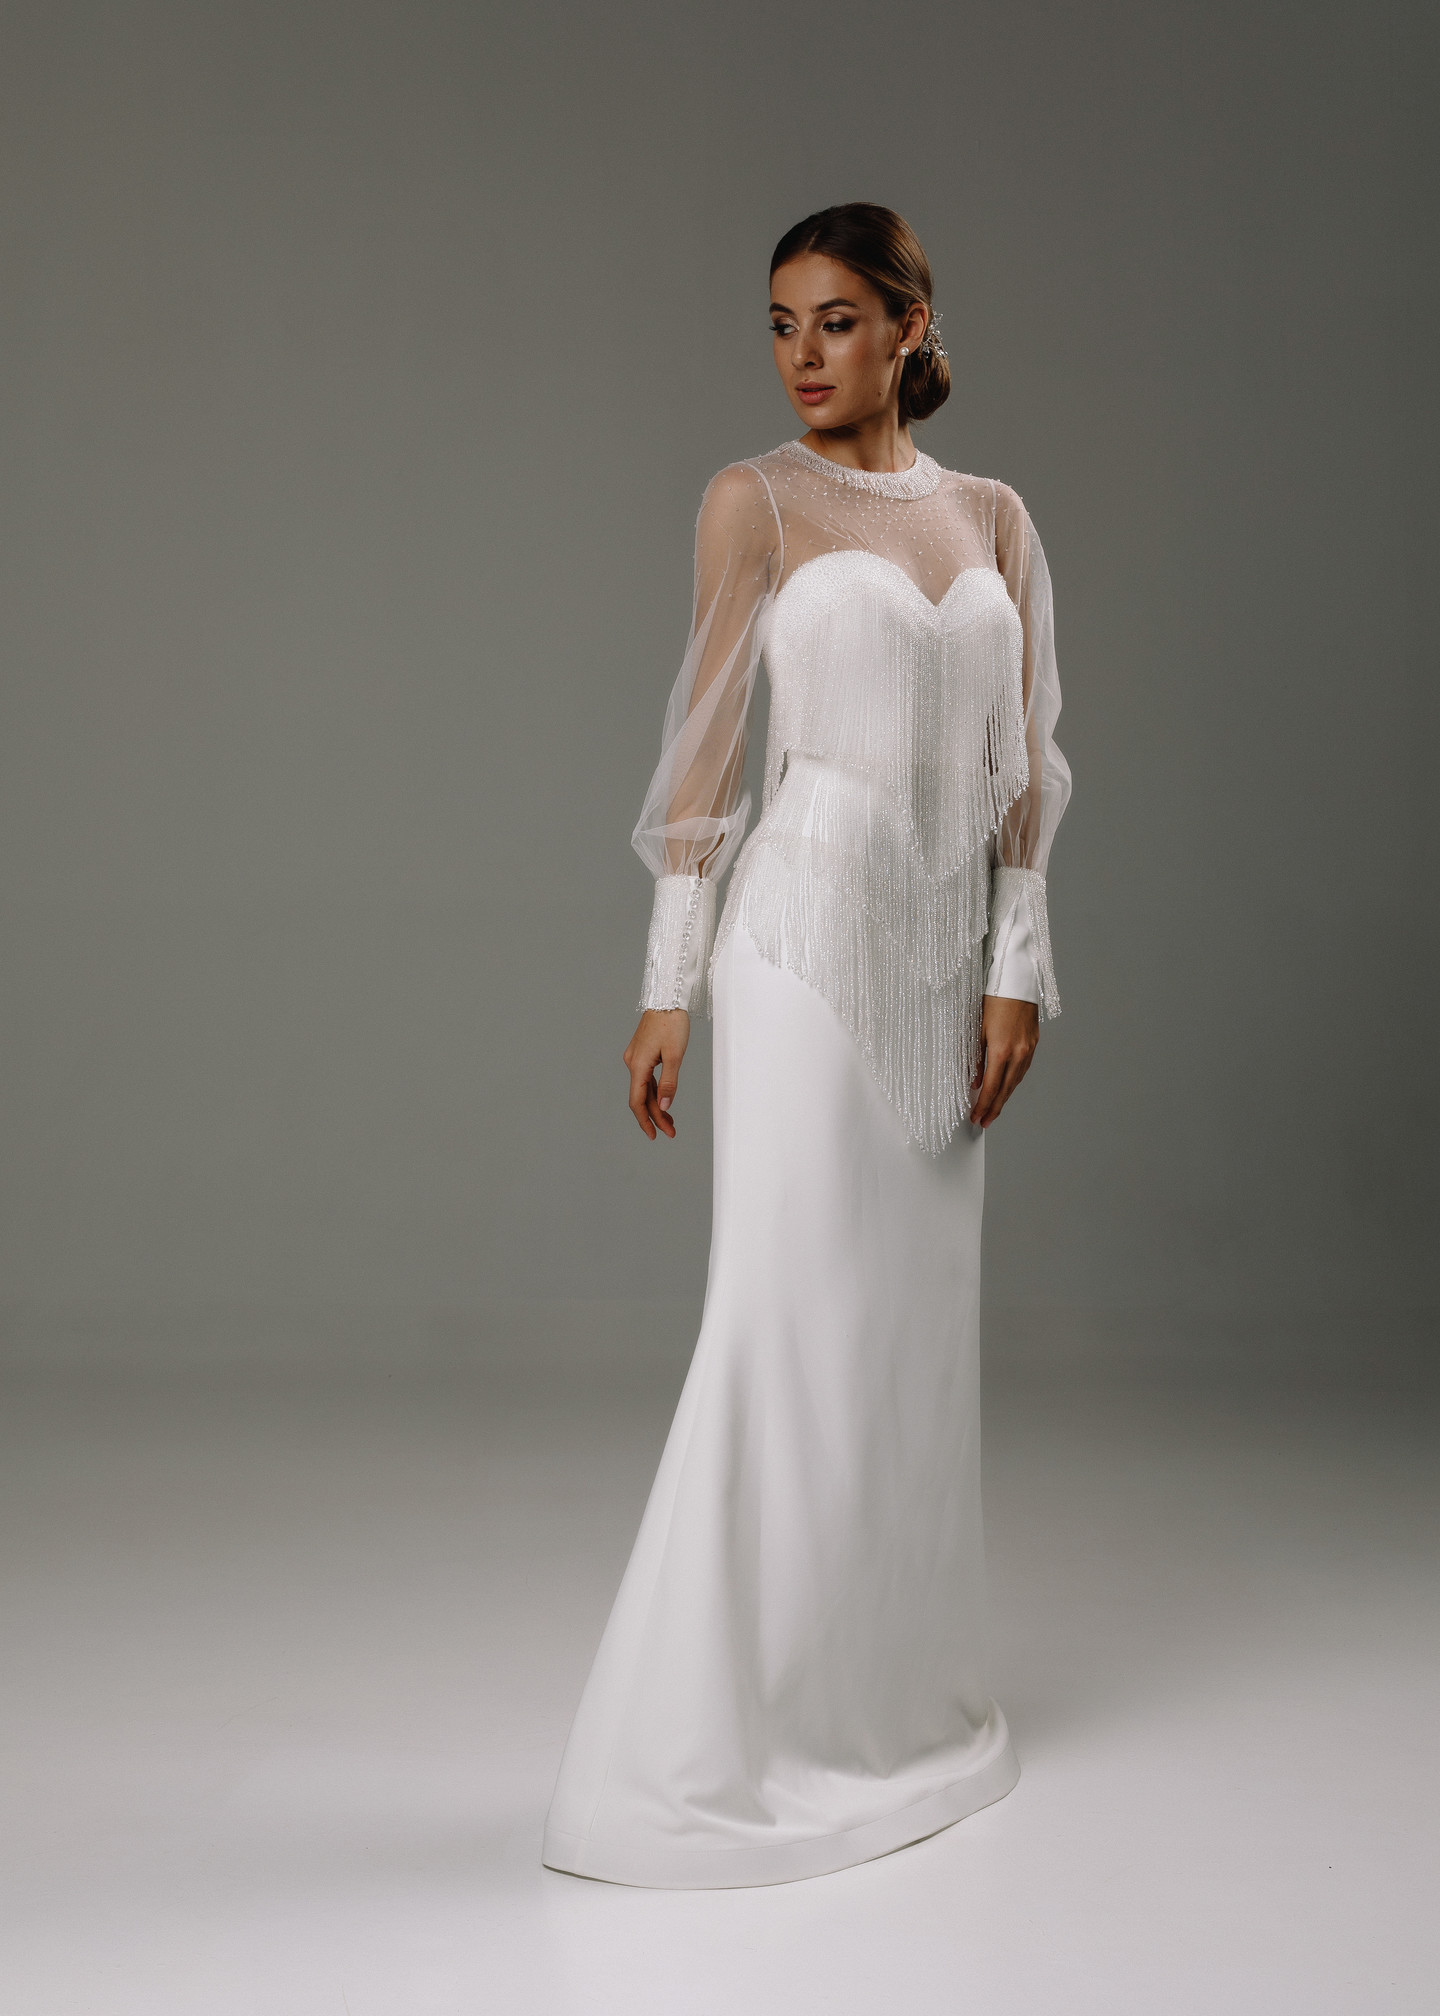 Платье Риана, 2020, одежда, платье, свадебное, молочно-белый, вышивка, русалка, рукава, популярное